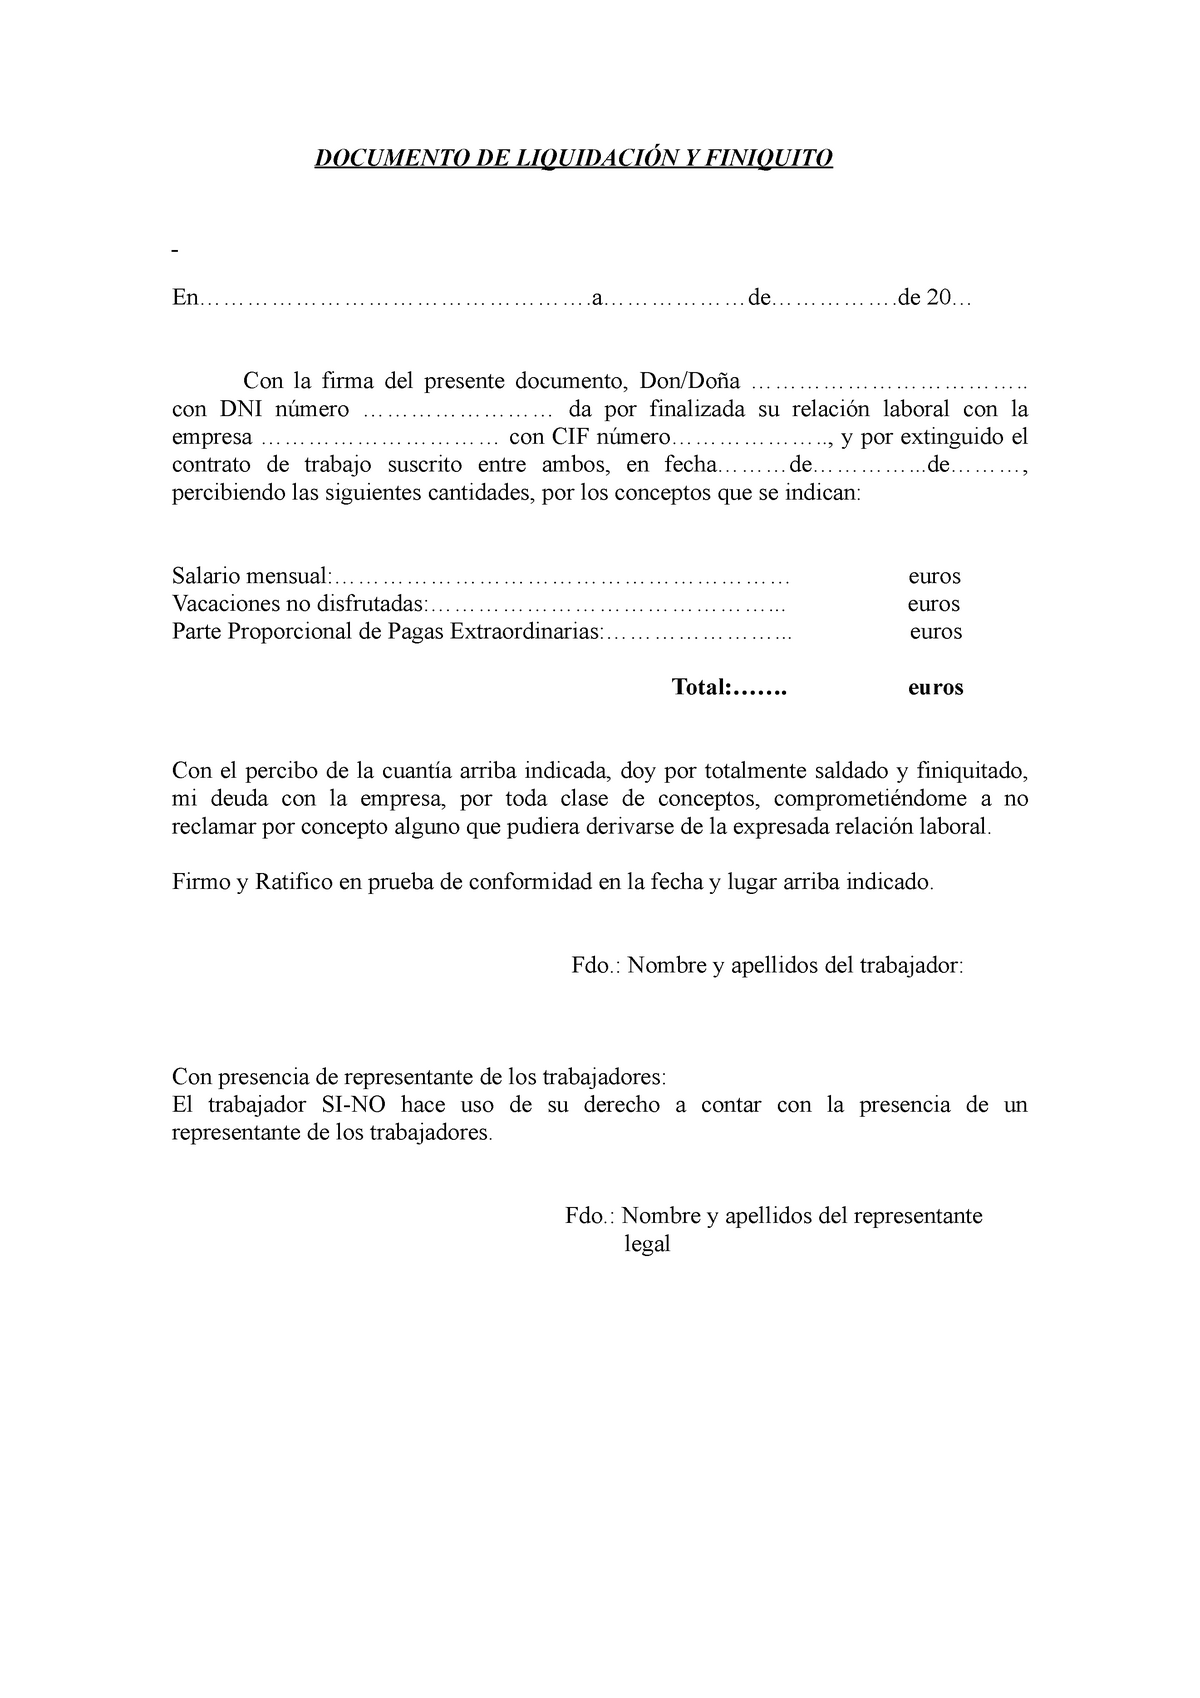 Documento de liquidacion y finiquito - Derecho laboral - UEX - Studocu